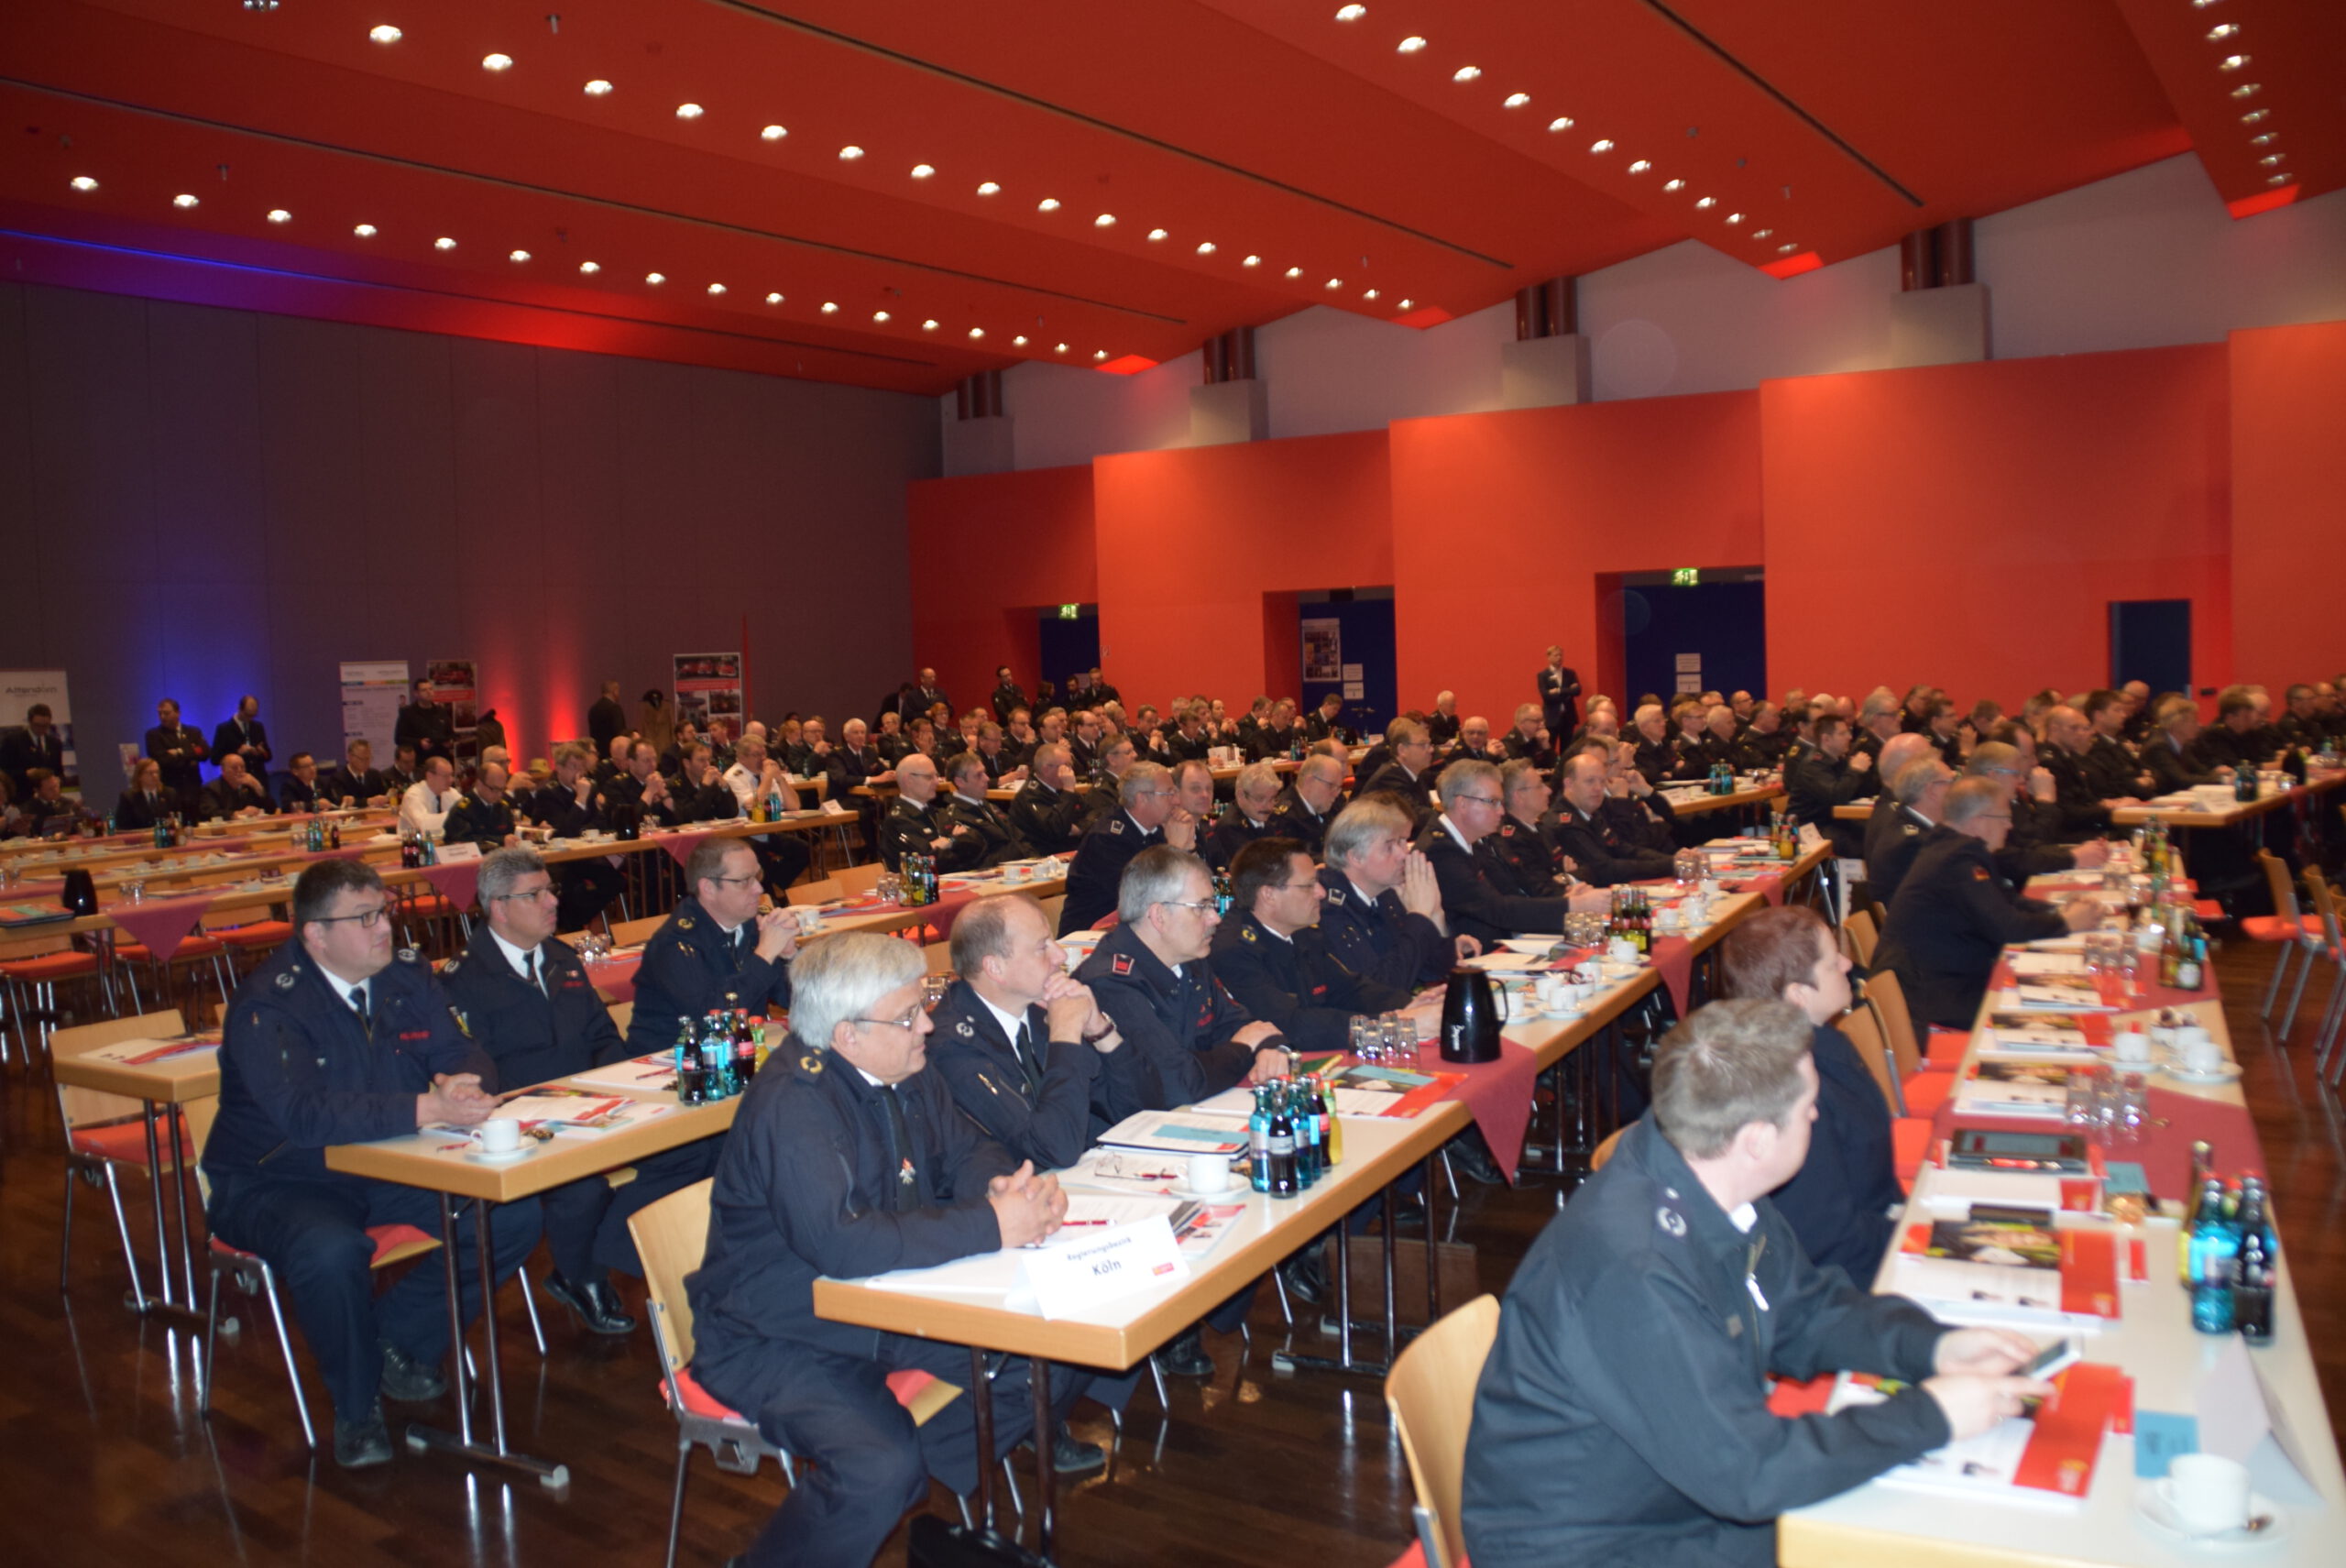 Verbandstagung der Feuerwehren aus NRW fand‘ am Wochenende in Attendorn statt